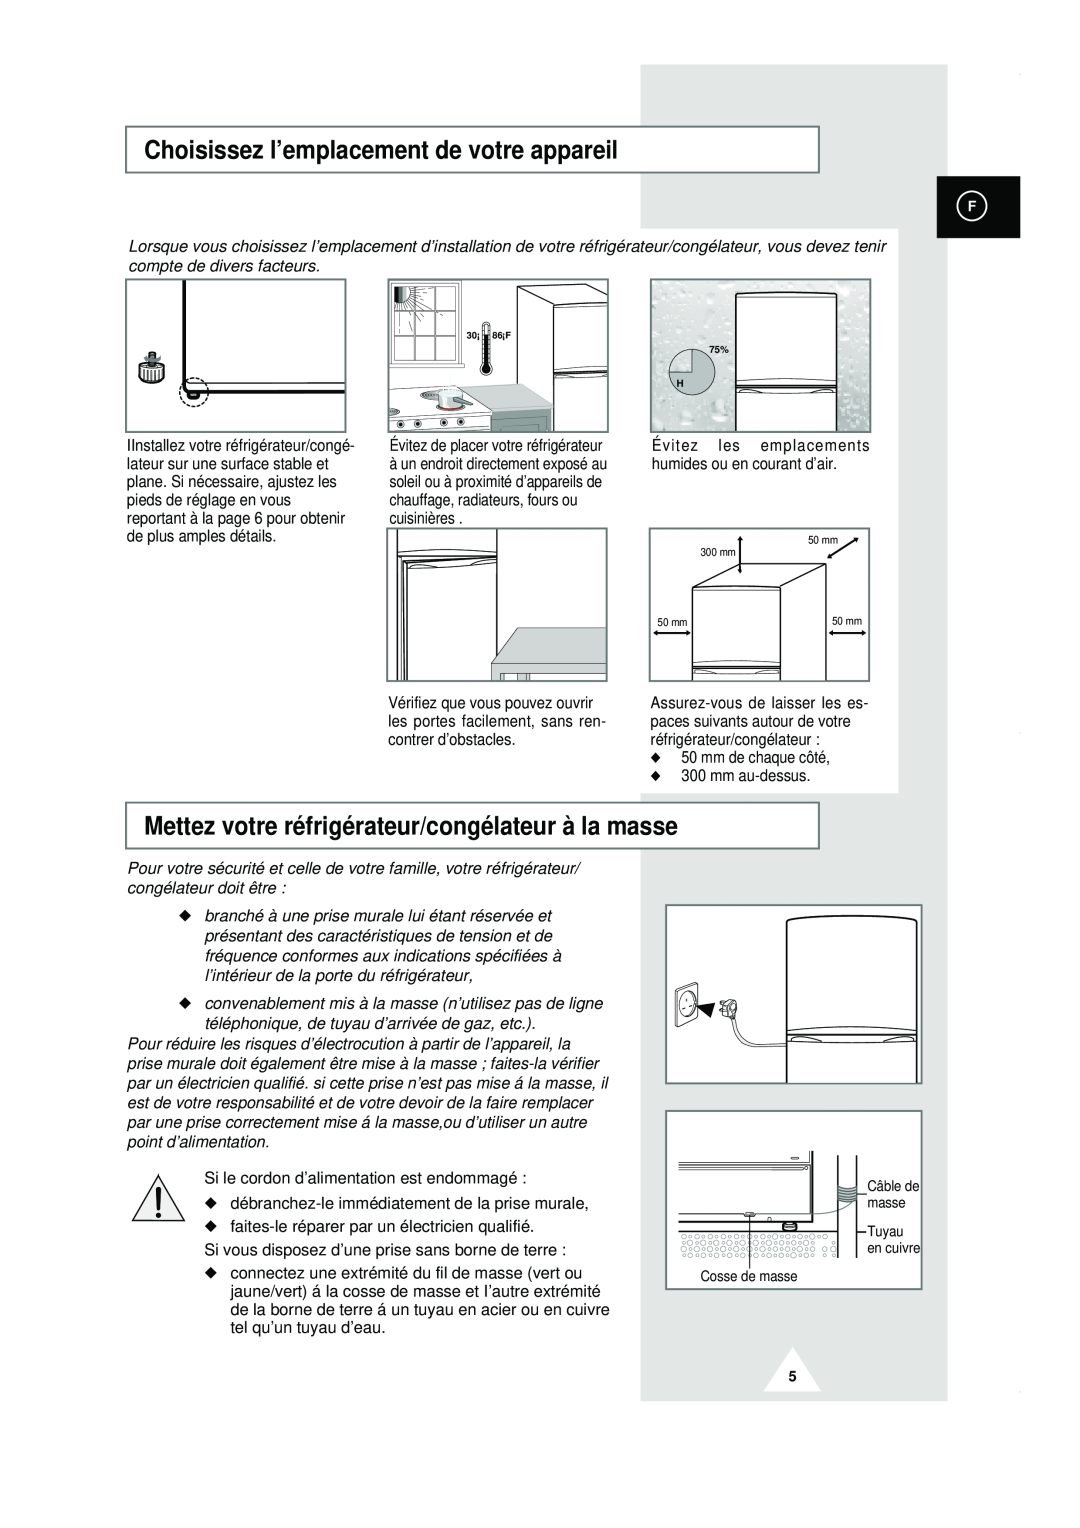 Samsung RT44MASM1/XEF manual Choisissez l’emplacement de votre appareil, Mettez votre réfrigérateur/congélateur à la masse 